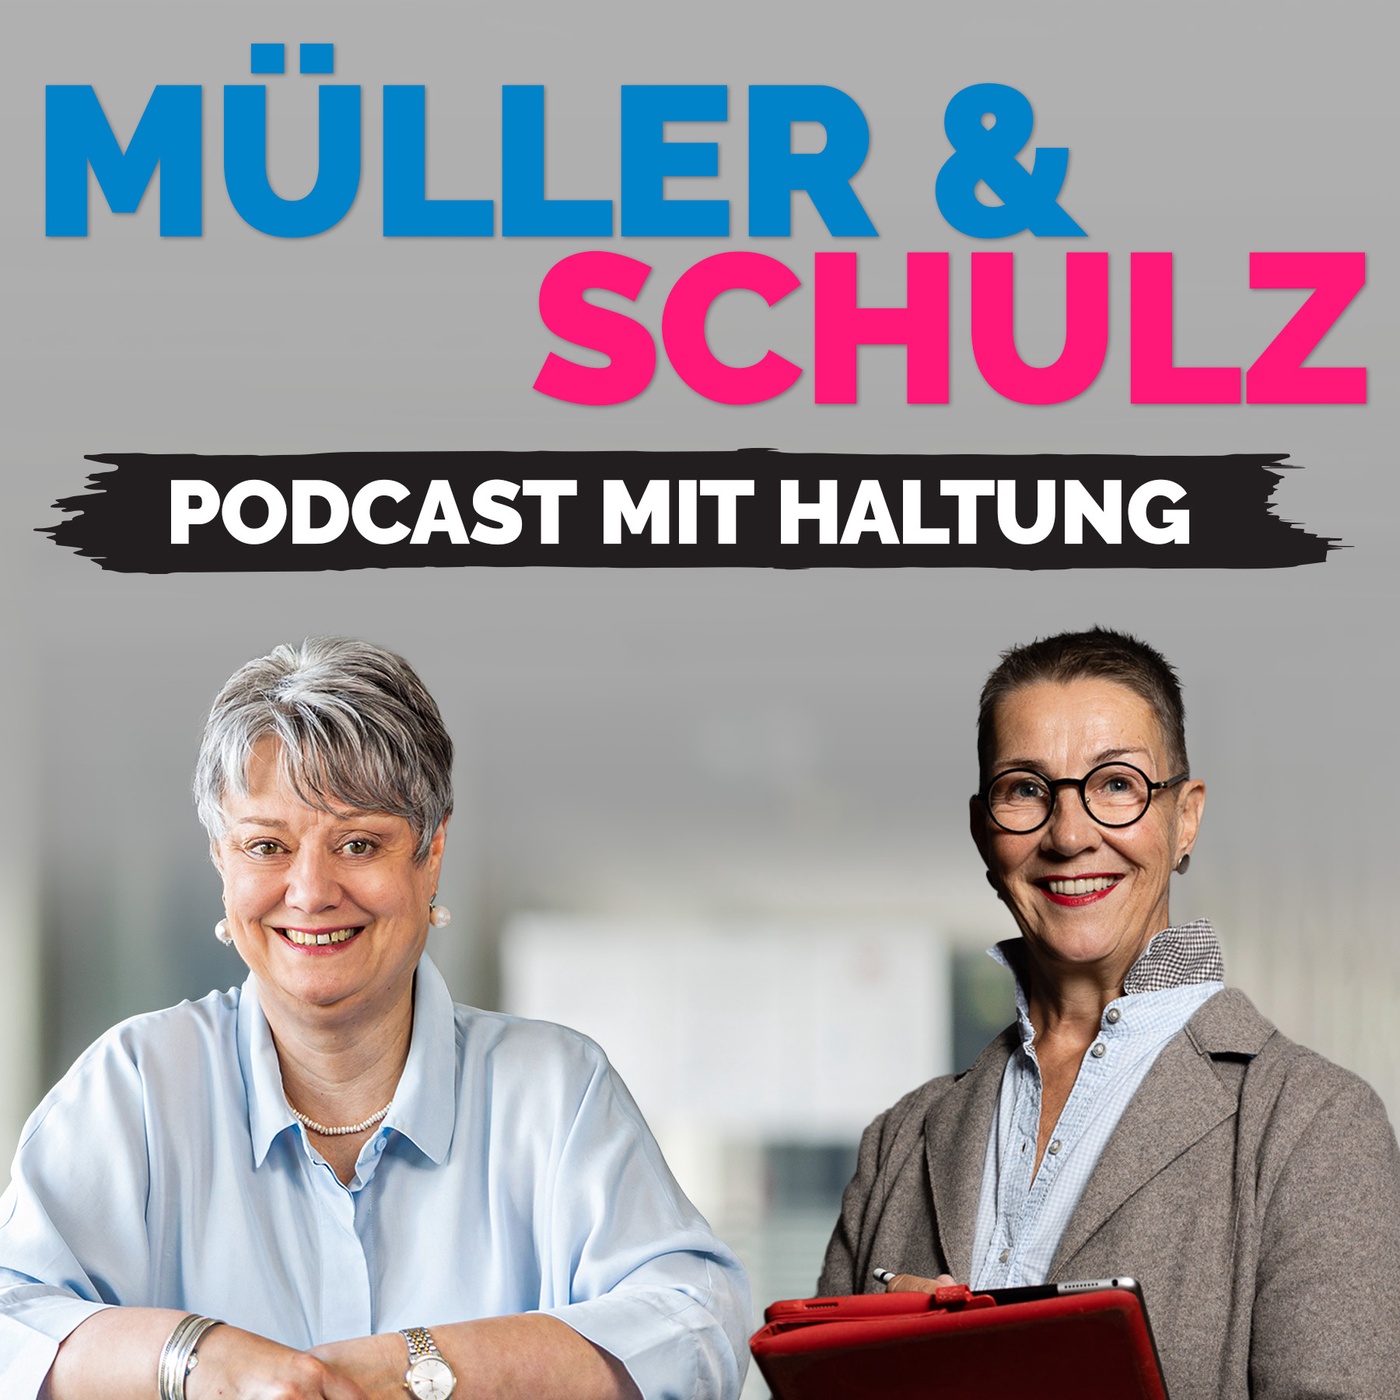 MÜLLER & SCHULZ Podcast mit Haltung